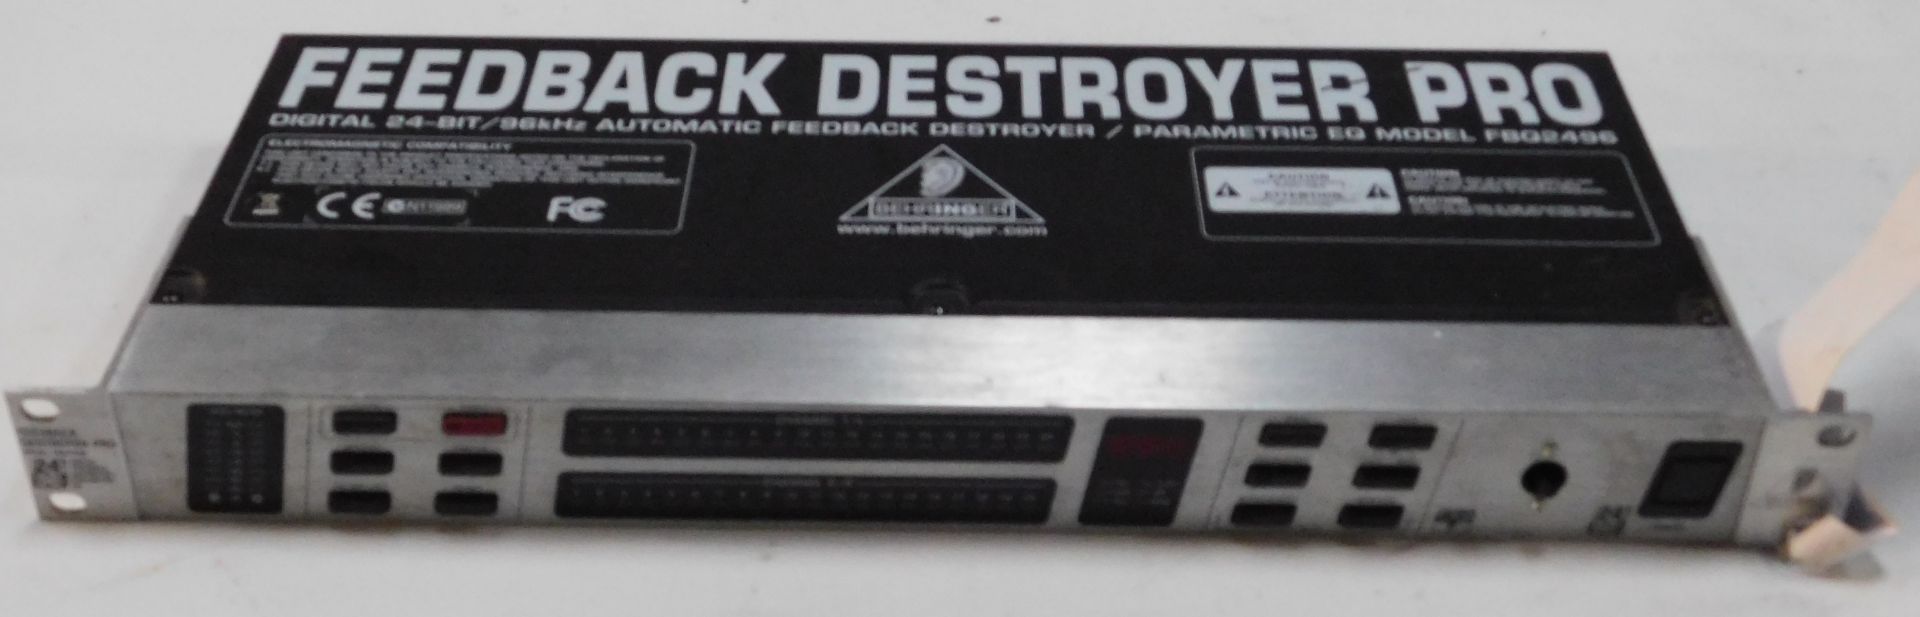 Botex DR-512 DMX Recorder, Pulse MPS Master DJ Player, Behringer Feedback Destroyer Pro, Model - Image 12 of 16